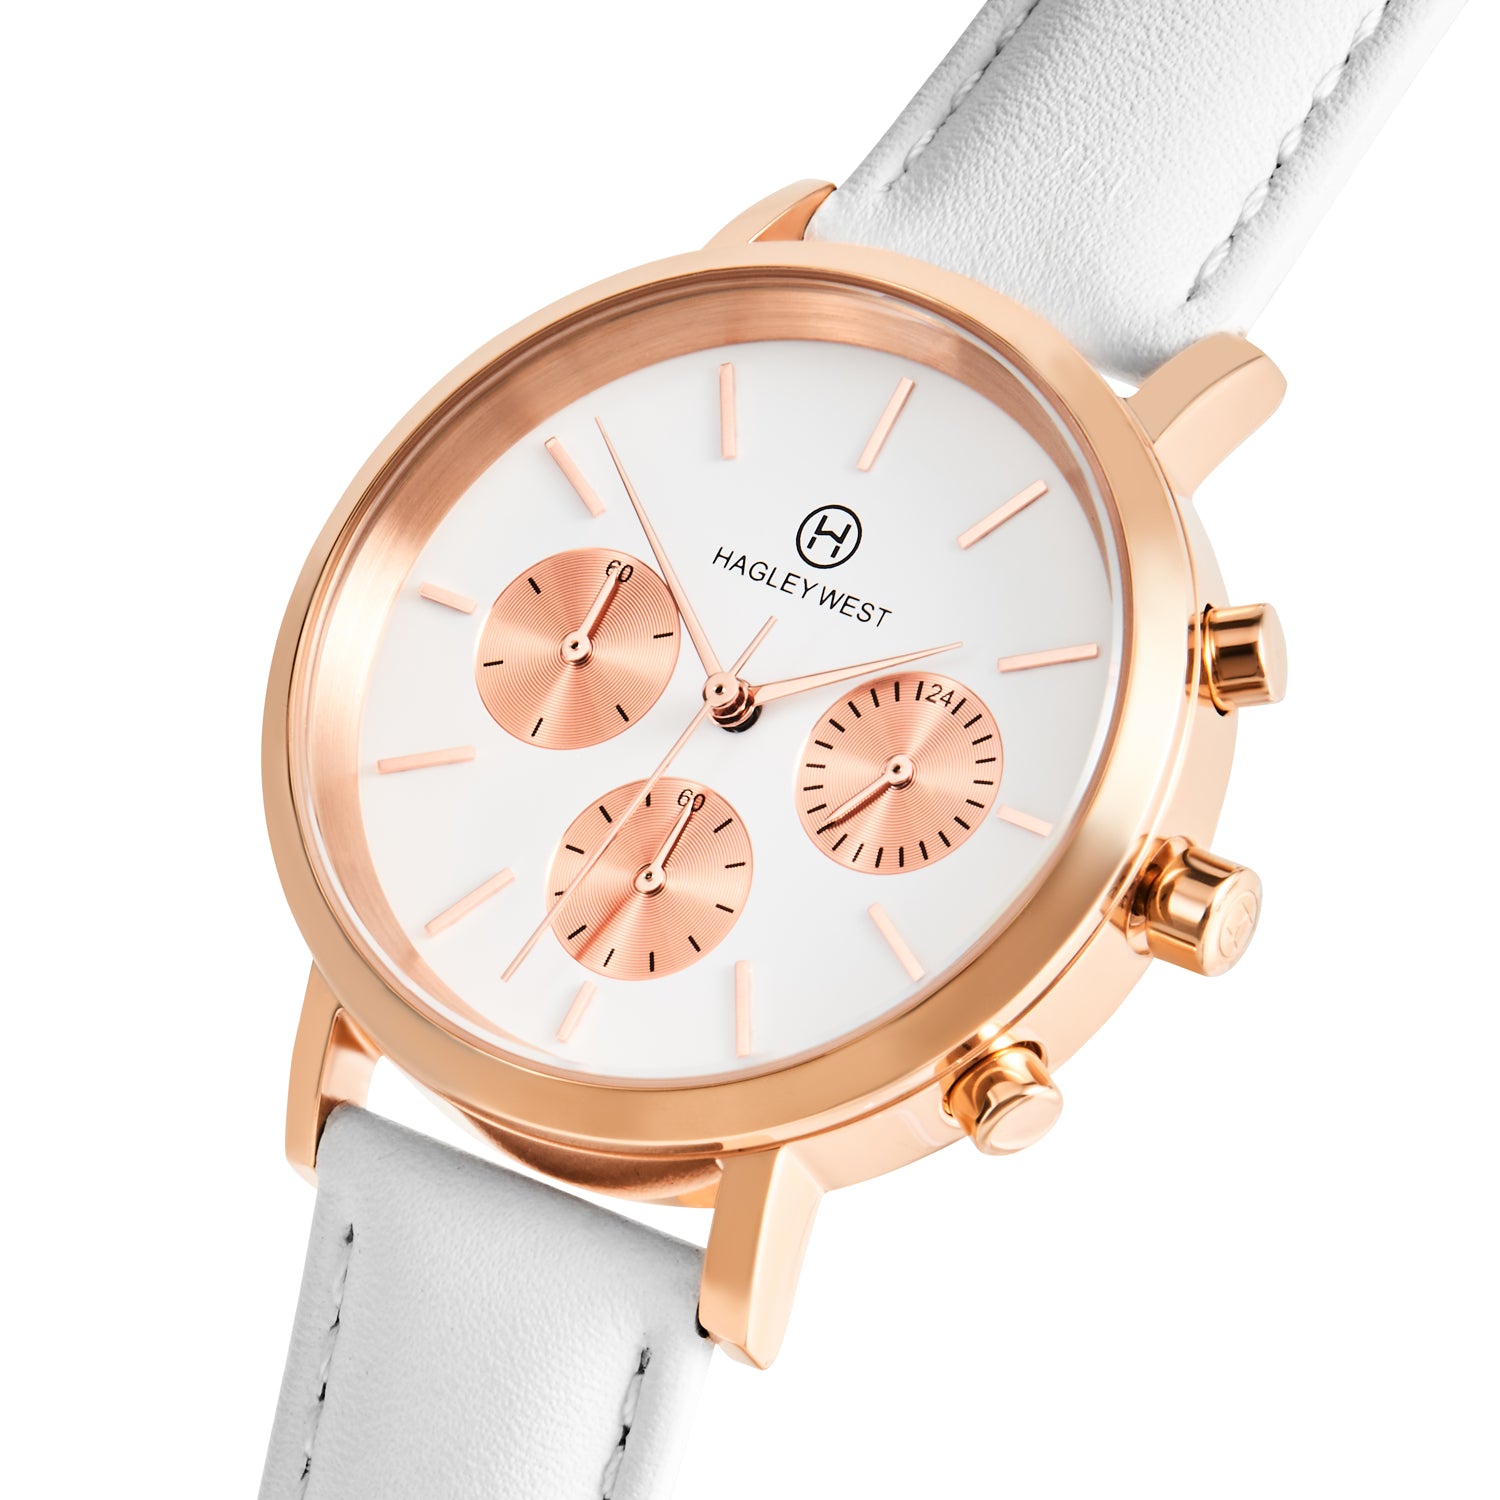 Reina Binibeca | White & Rose Gold Watch | Women's Watches | Hagley West